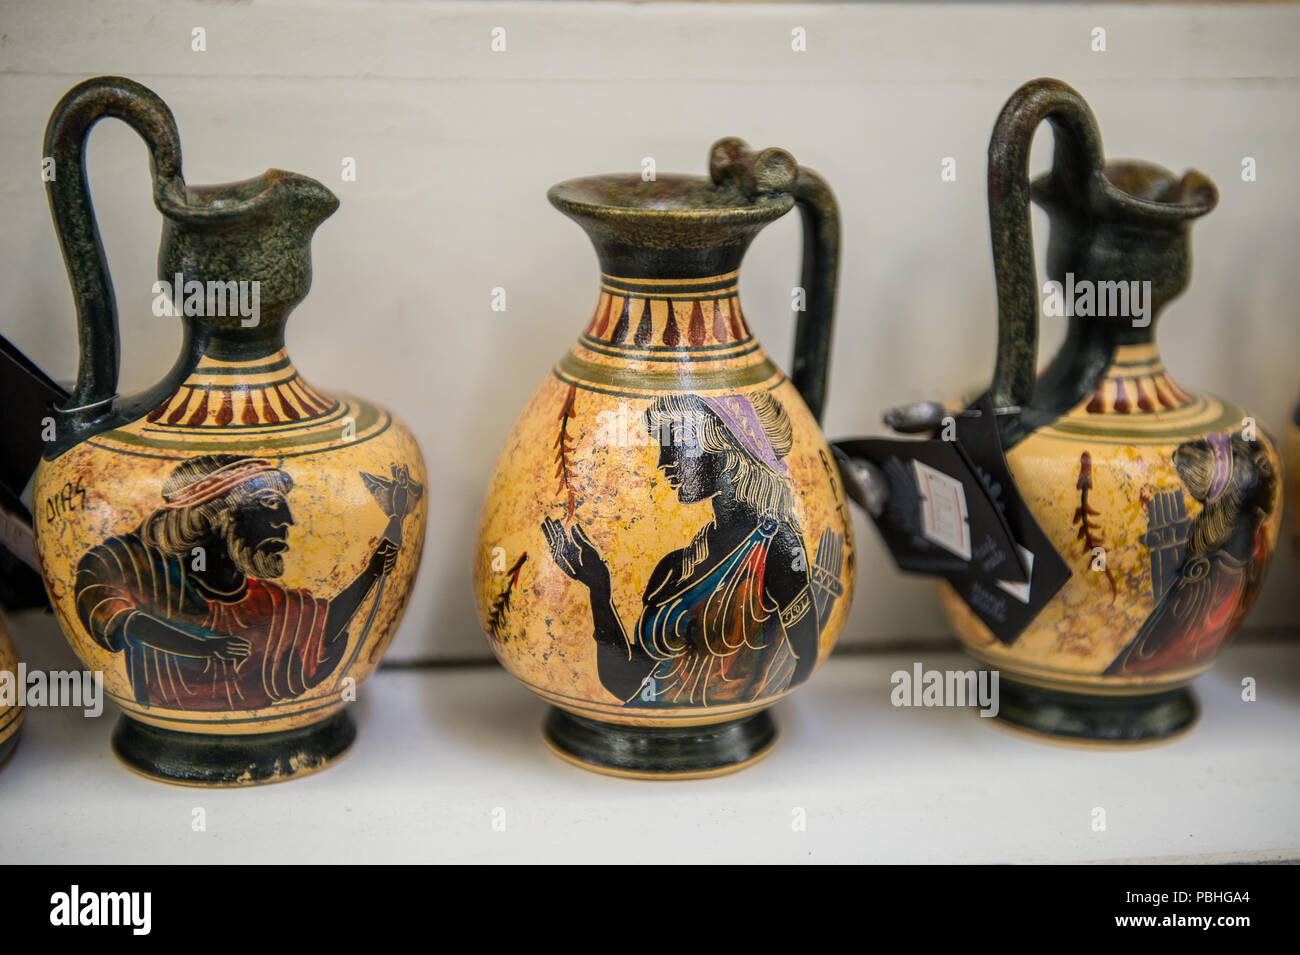 KALAMBAKA, Grecia - Mar 20, 2015: La cerámica griega con el ornamento tradicional griega. La cerámica griega son el recuerdo popular en Grecia Foto de stock